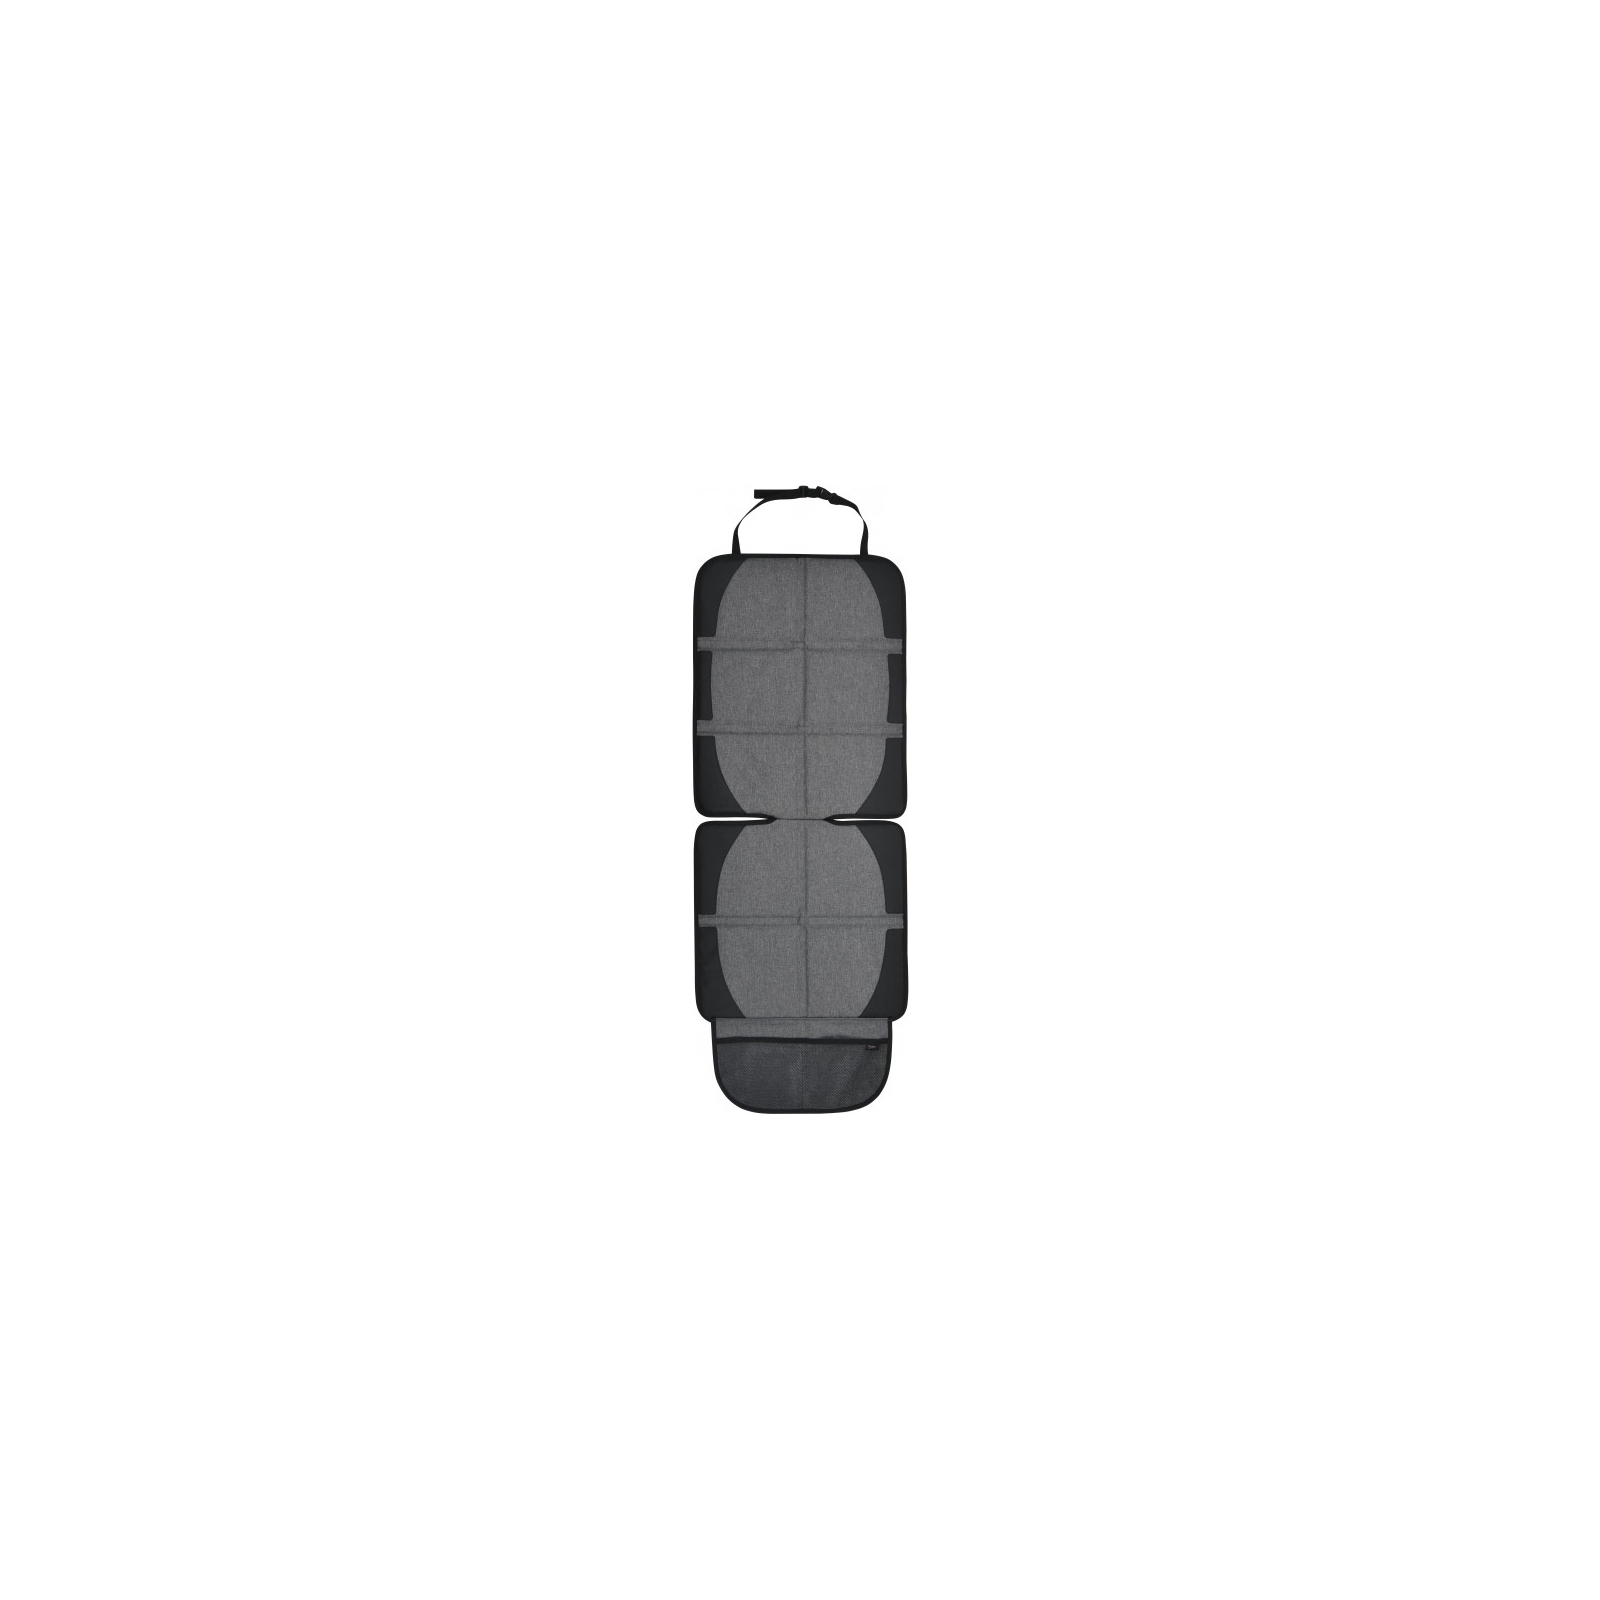 Защитный коврик Bugs для автомобильного сиденья (6901319001044) изображение 2